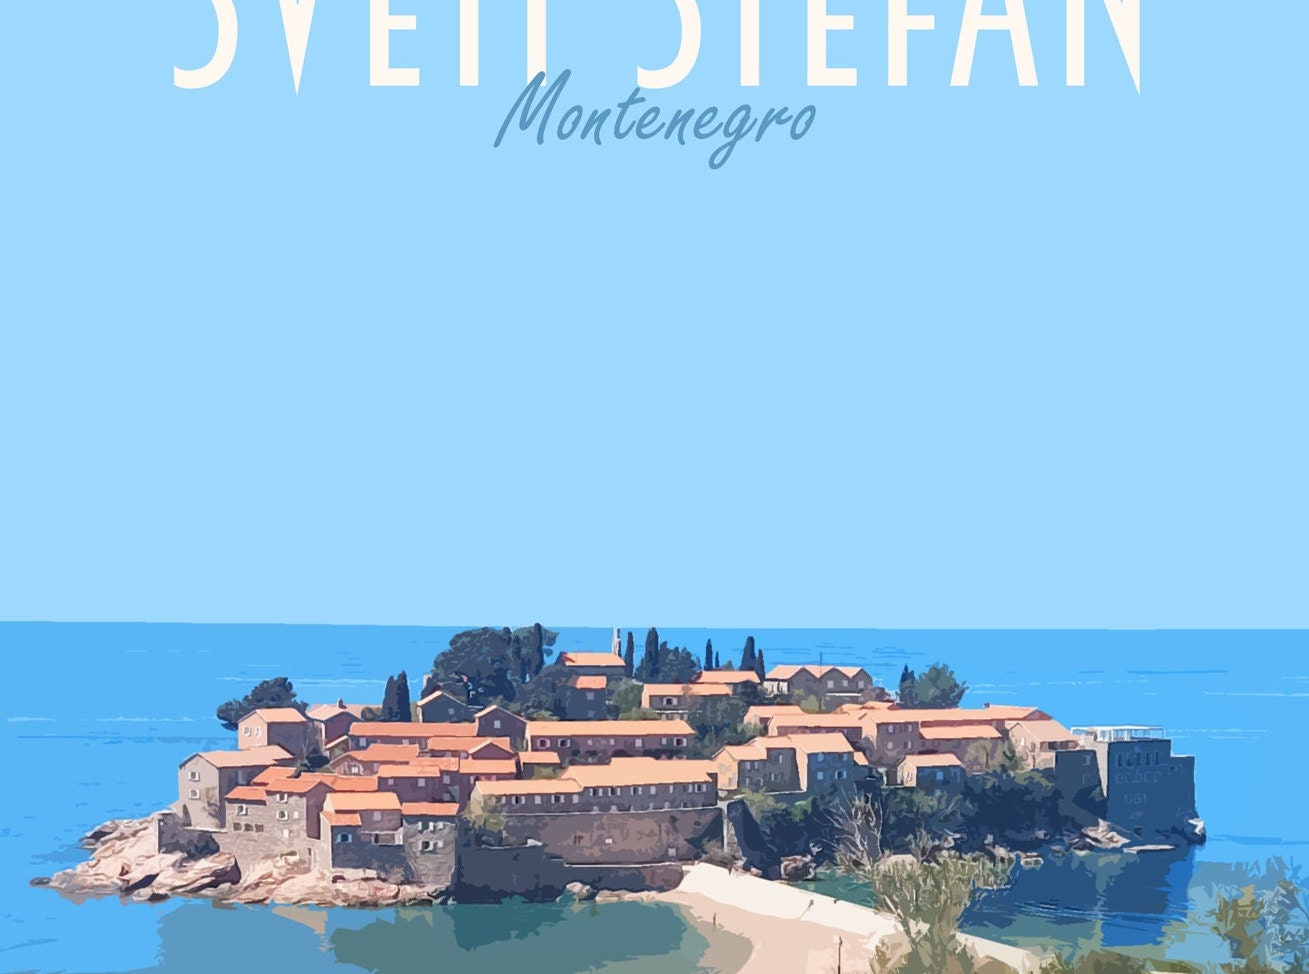 Sveti Stefan Travel Poster